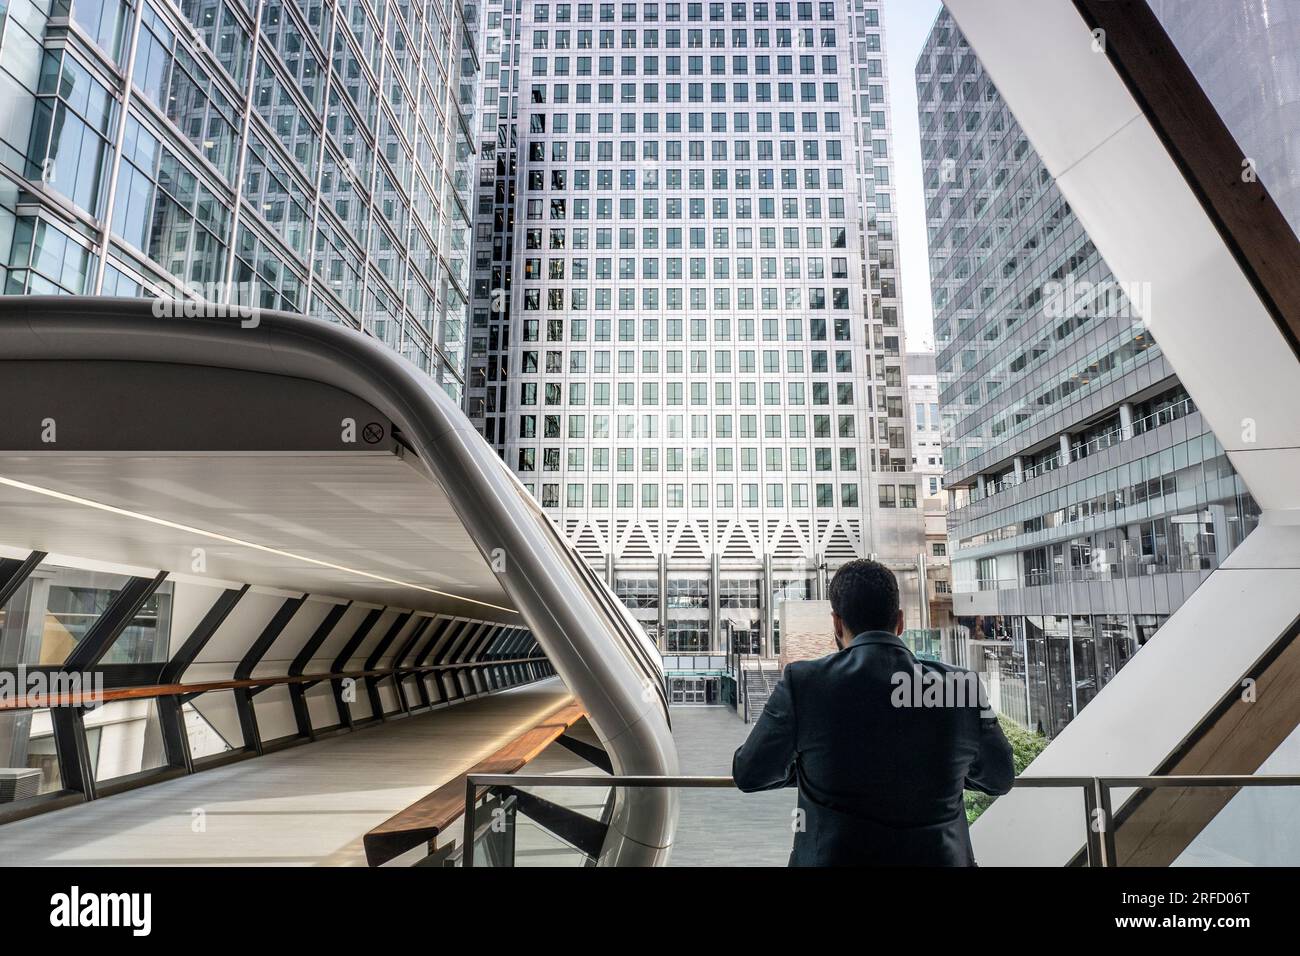 Man & futuristische Architekturperspektive allein, London Canary Wharf Plaza, Beschäftigung Zukunftsperspektiven Gehaltsumfeld. Canary One Tower London UK Stockfoto